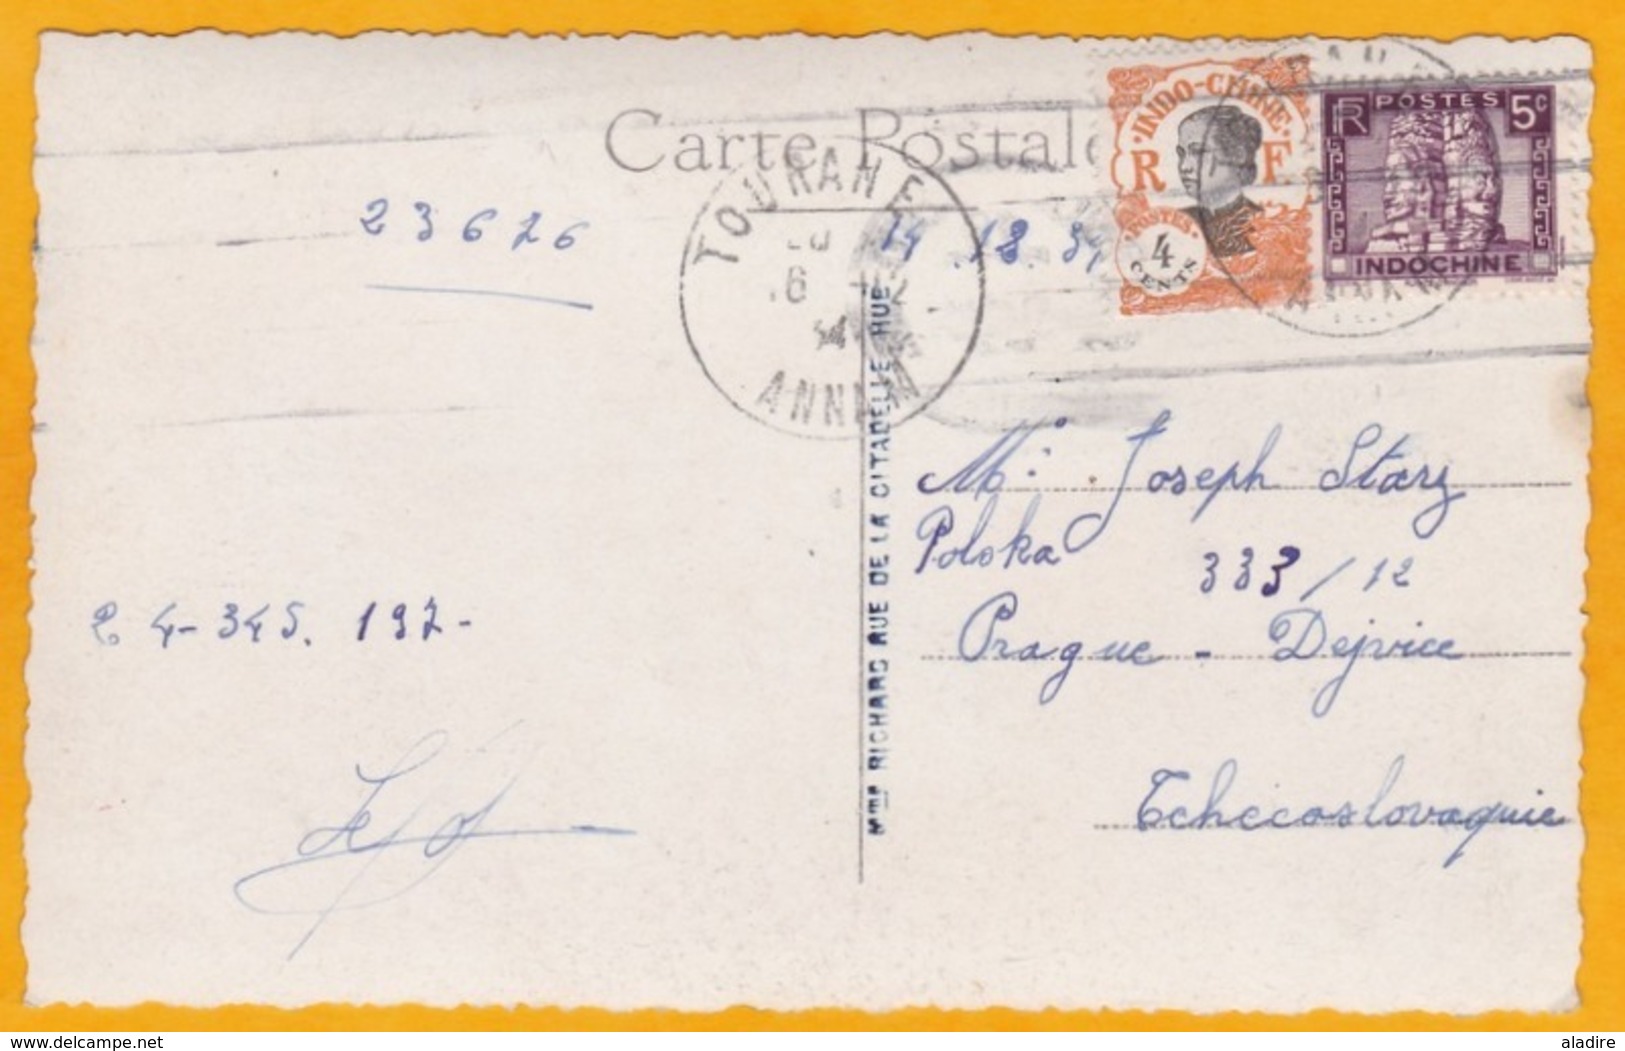 1934 - CP Photo De TOURANE, Annam Vers Prague, Tchécoslovaquie -  Cad Transit Et Arrivée (OMEC) - Vue Pêche à L'épervier - Covers & Documents